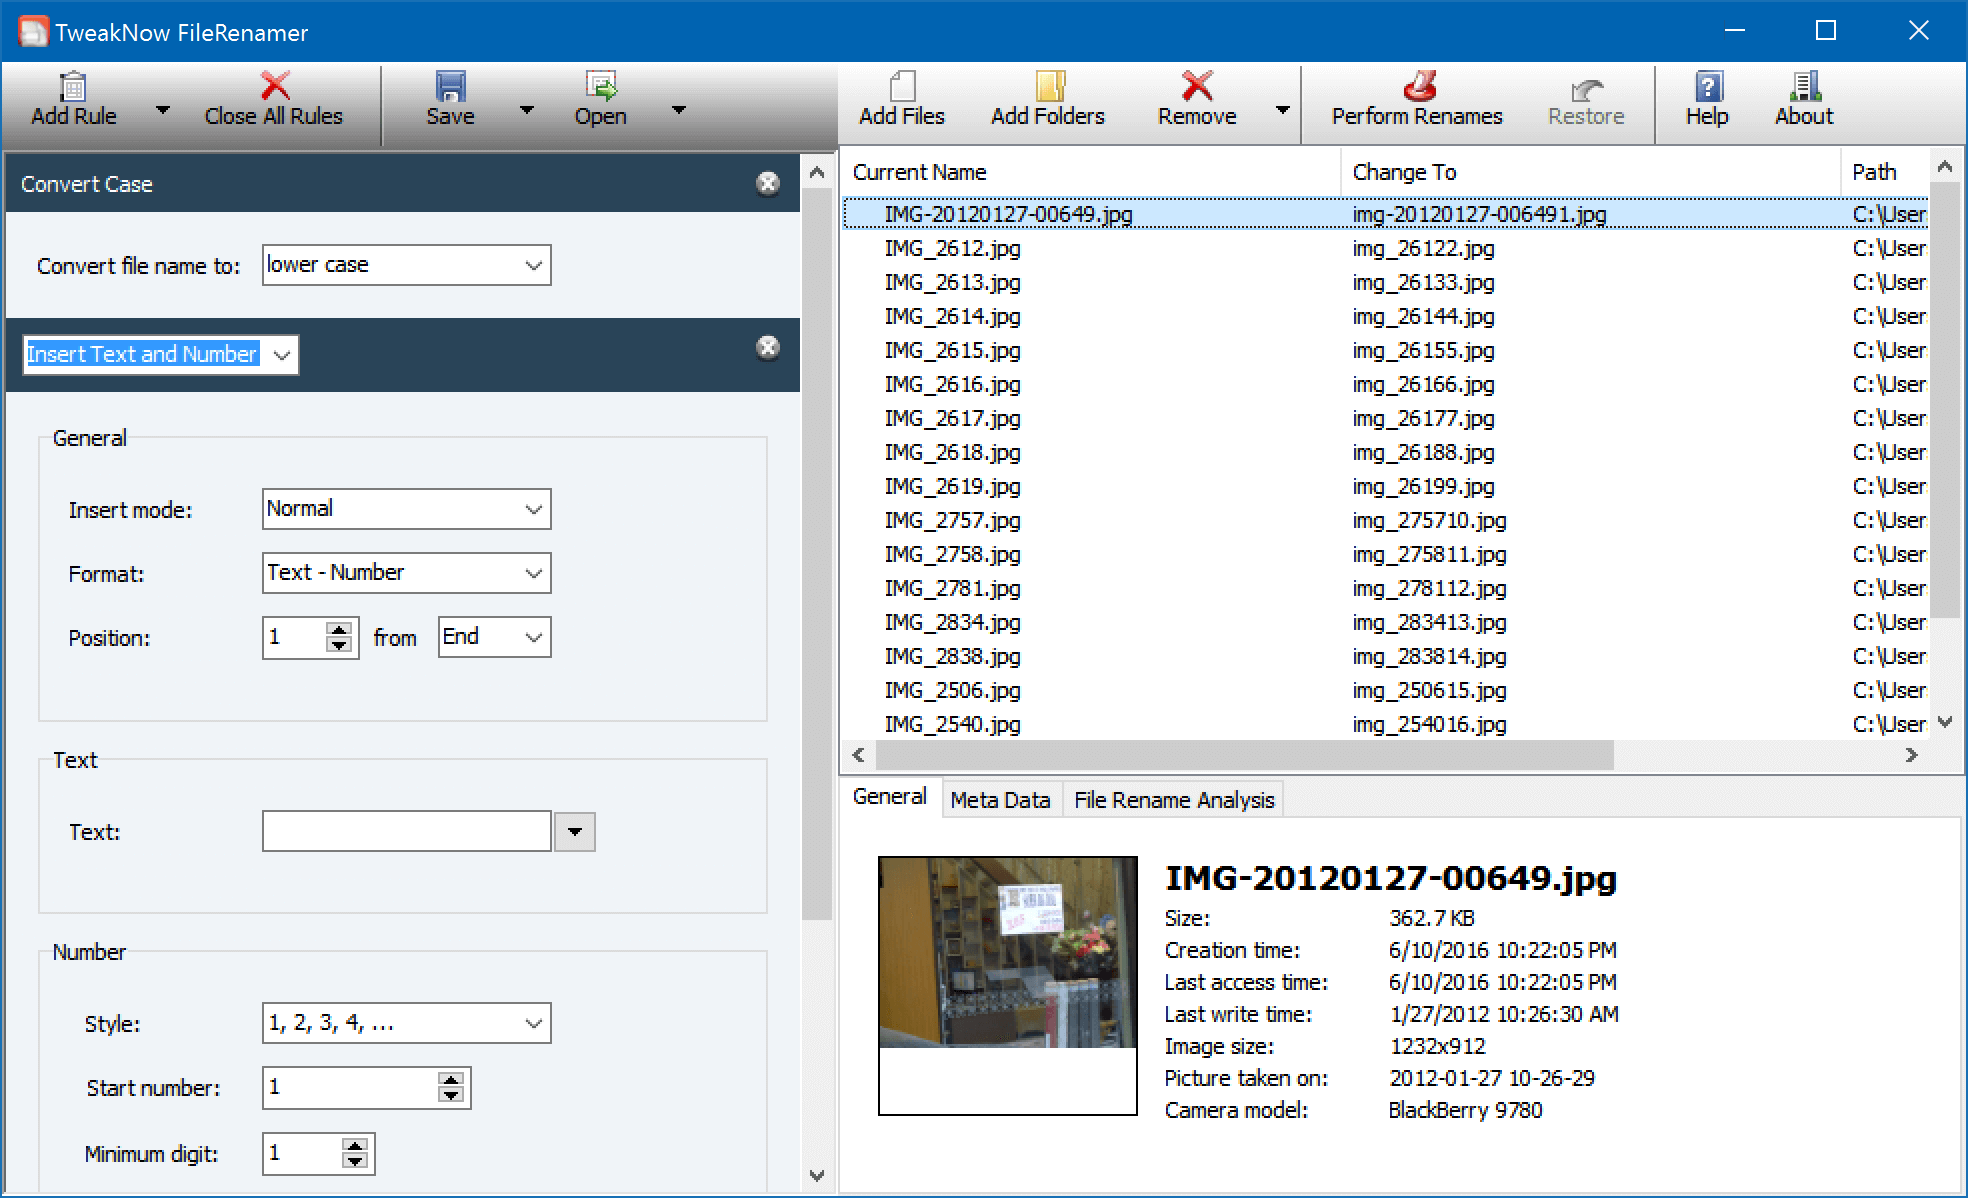 Windows 10 TweakNow FileRenamer full